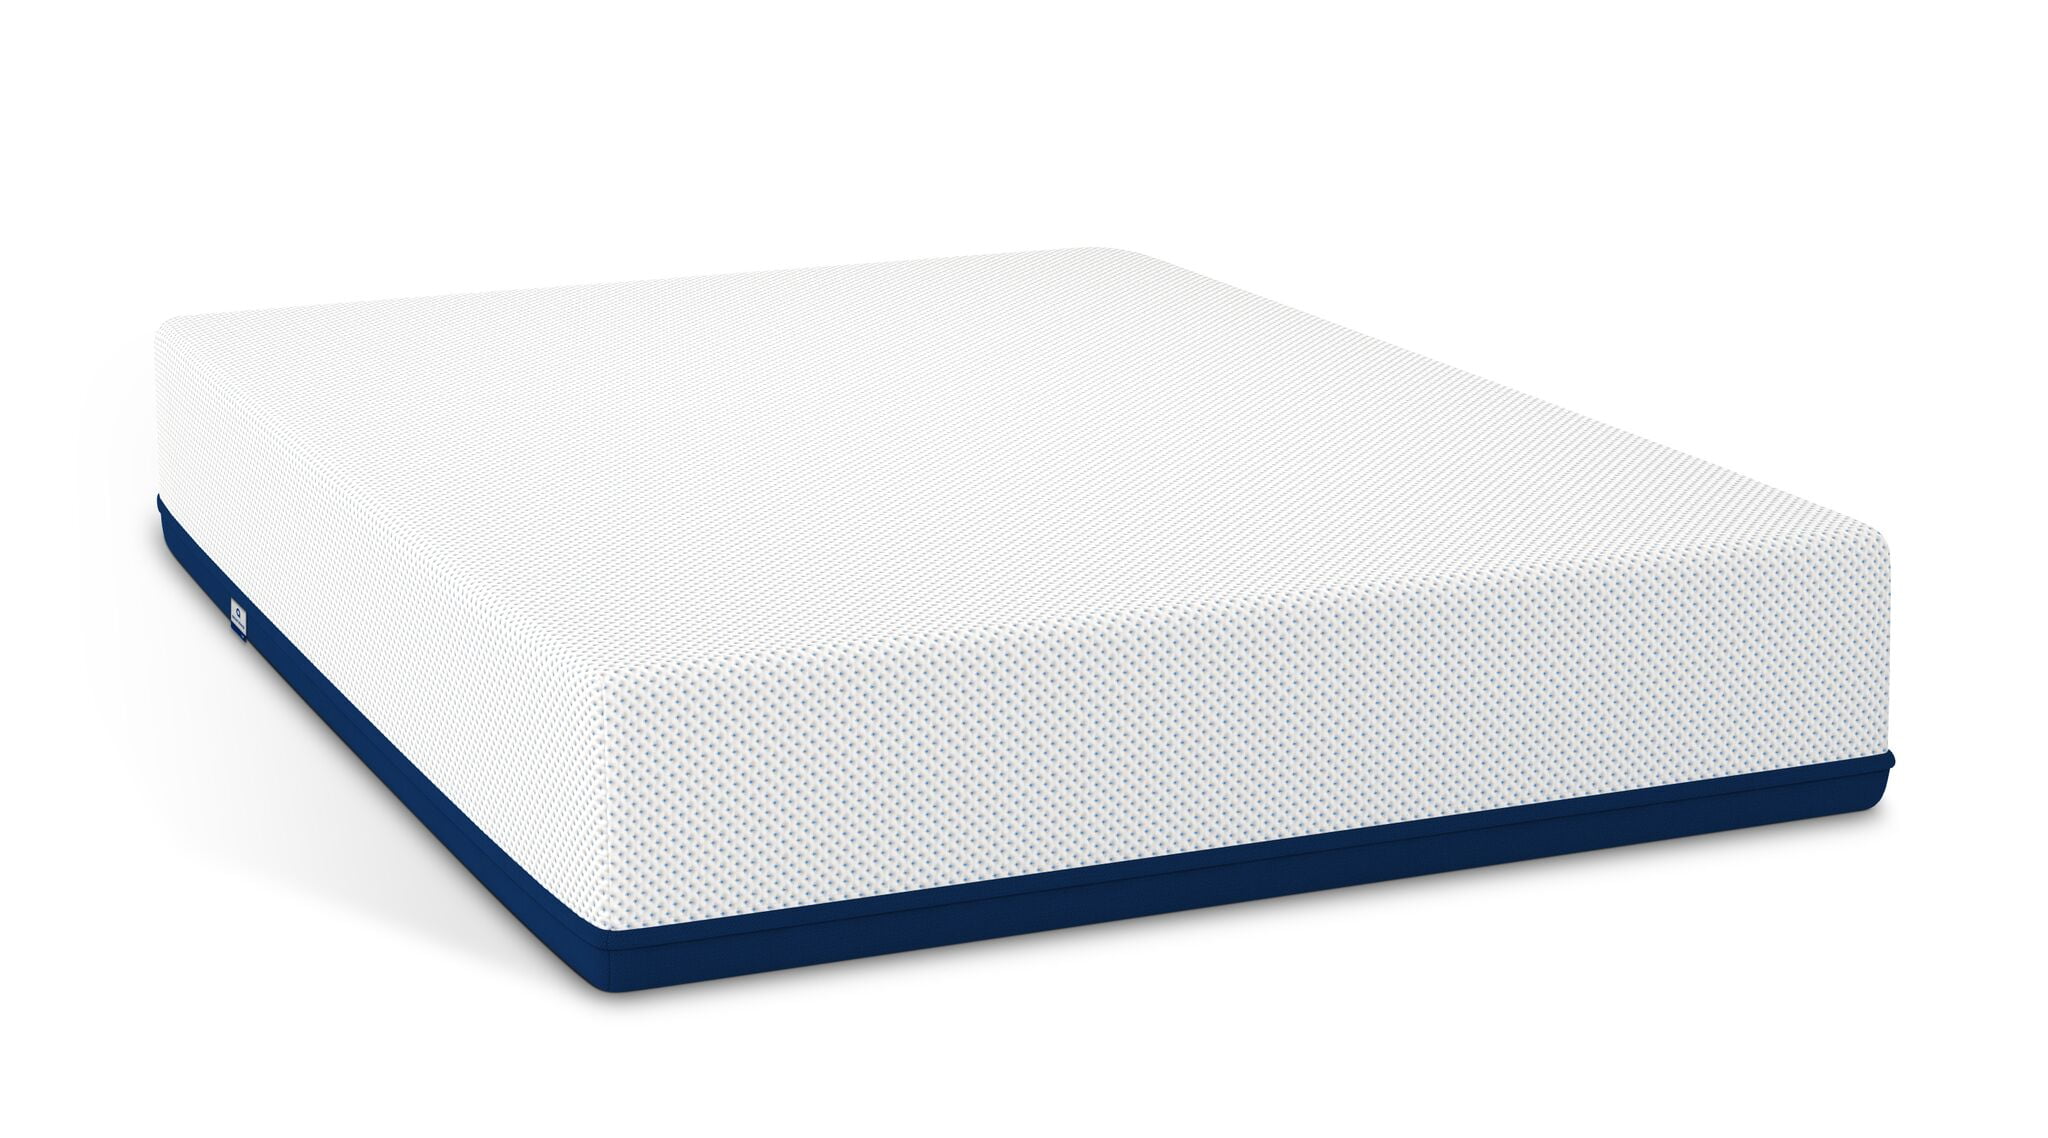 softest mattress for adjustable beds